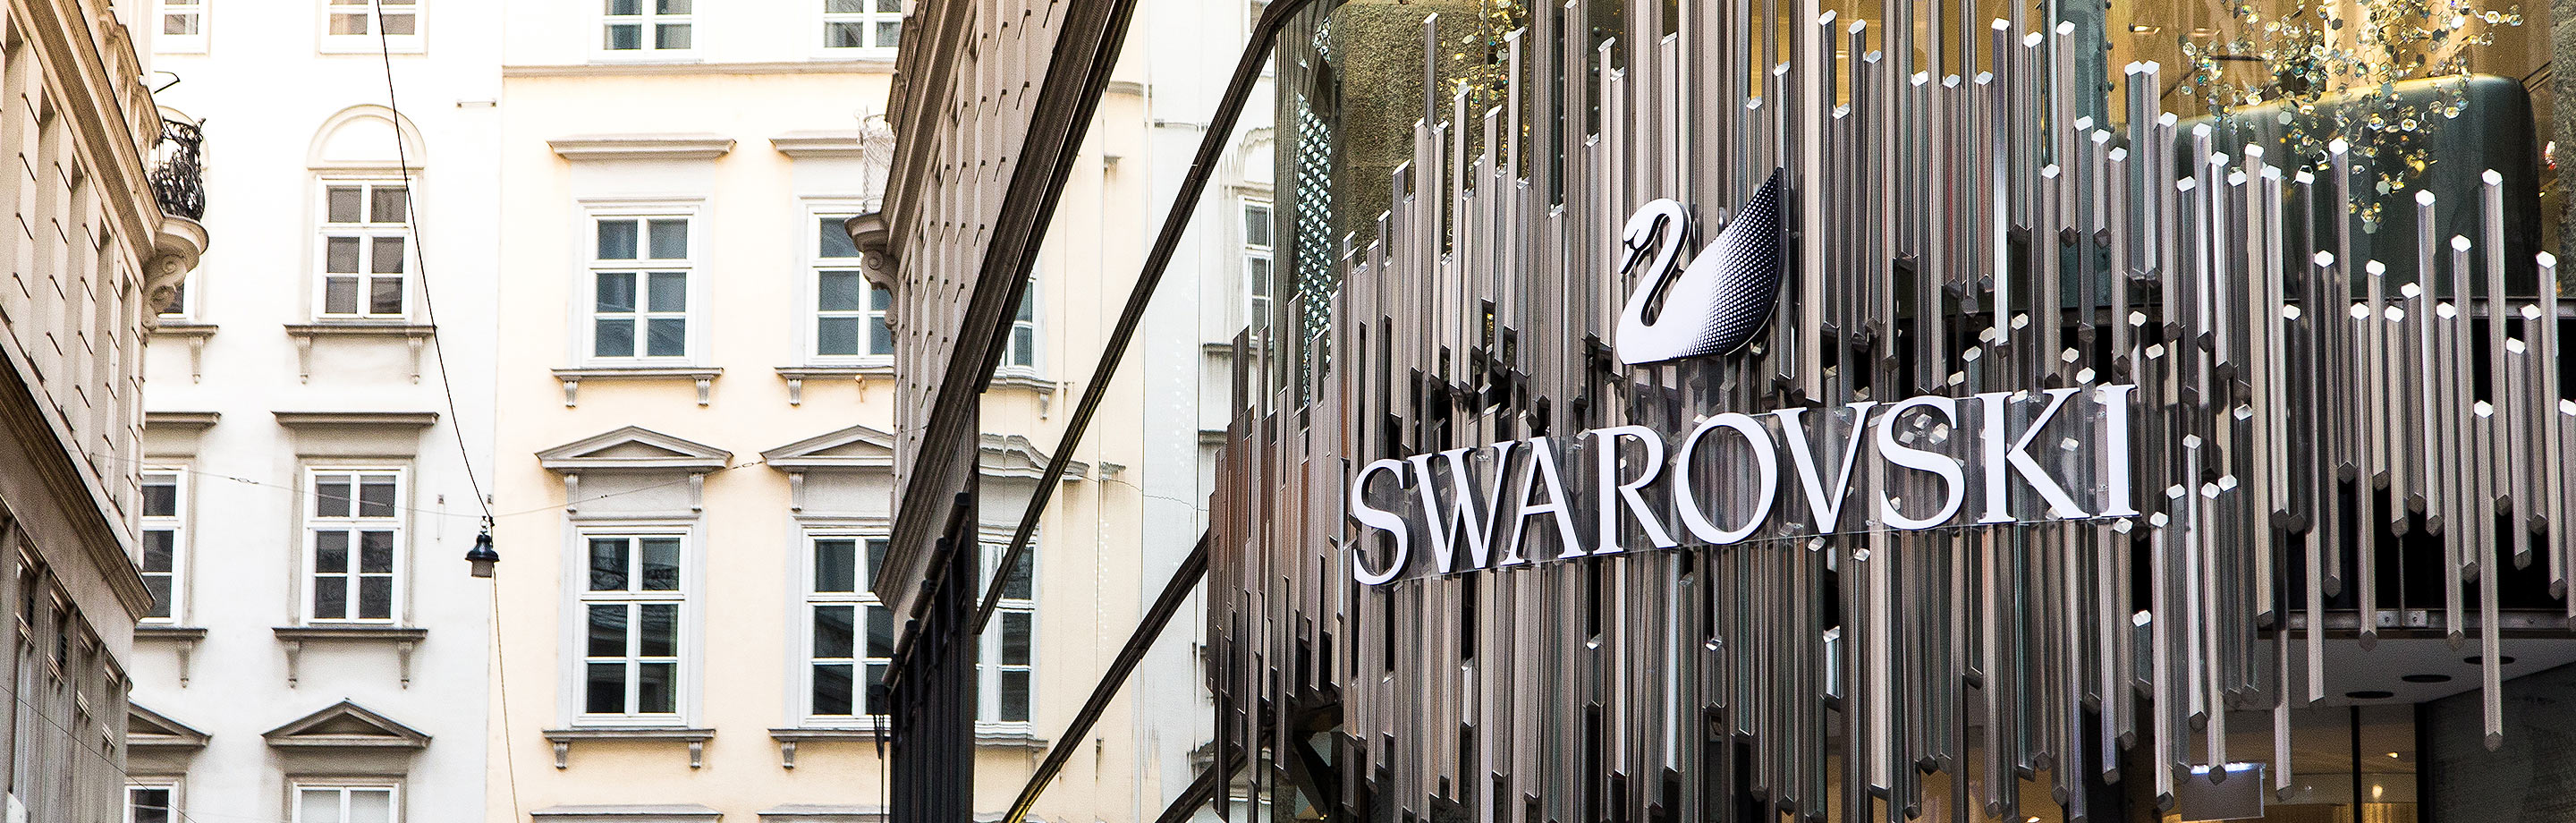 Außenansicht eines Swarovski Stores mit Logo und Schwan-Symbol vor historischen Altbau-Fassaden